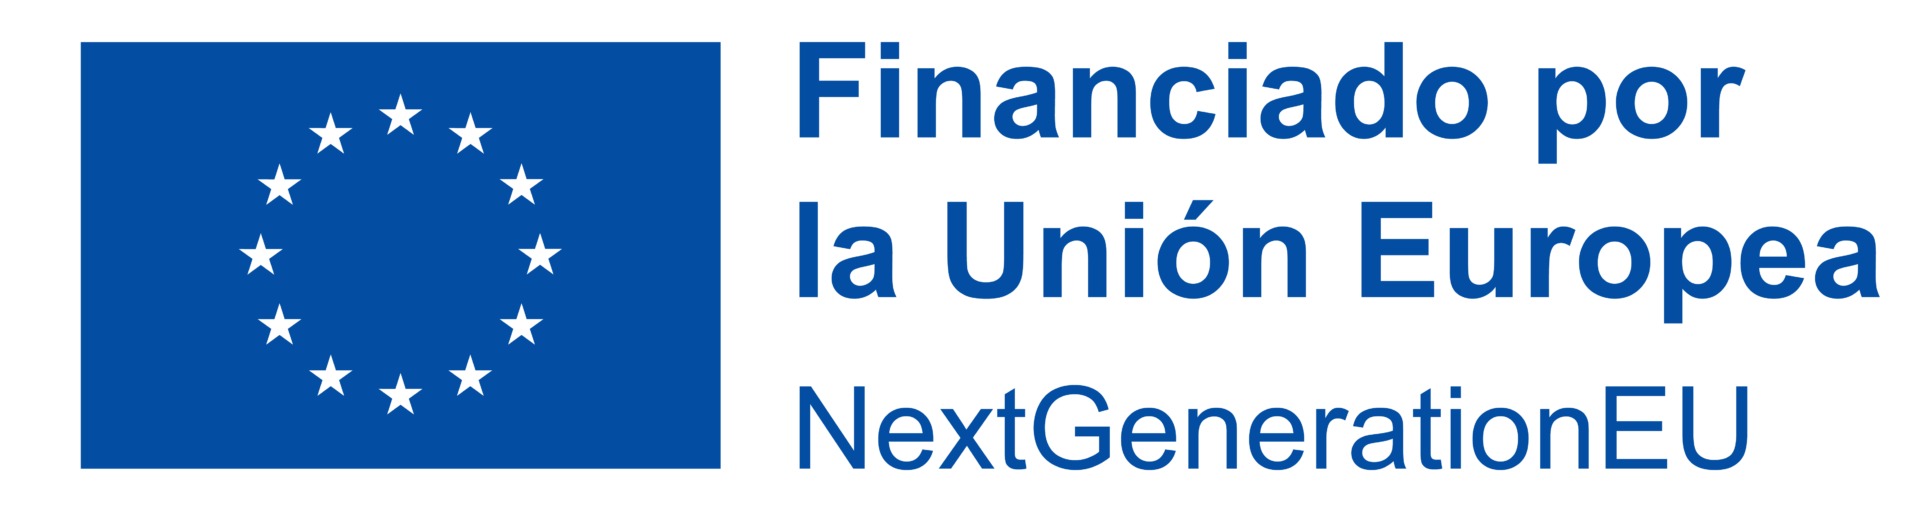 Logo Financiado por la Unión Europea Next Generation